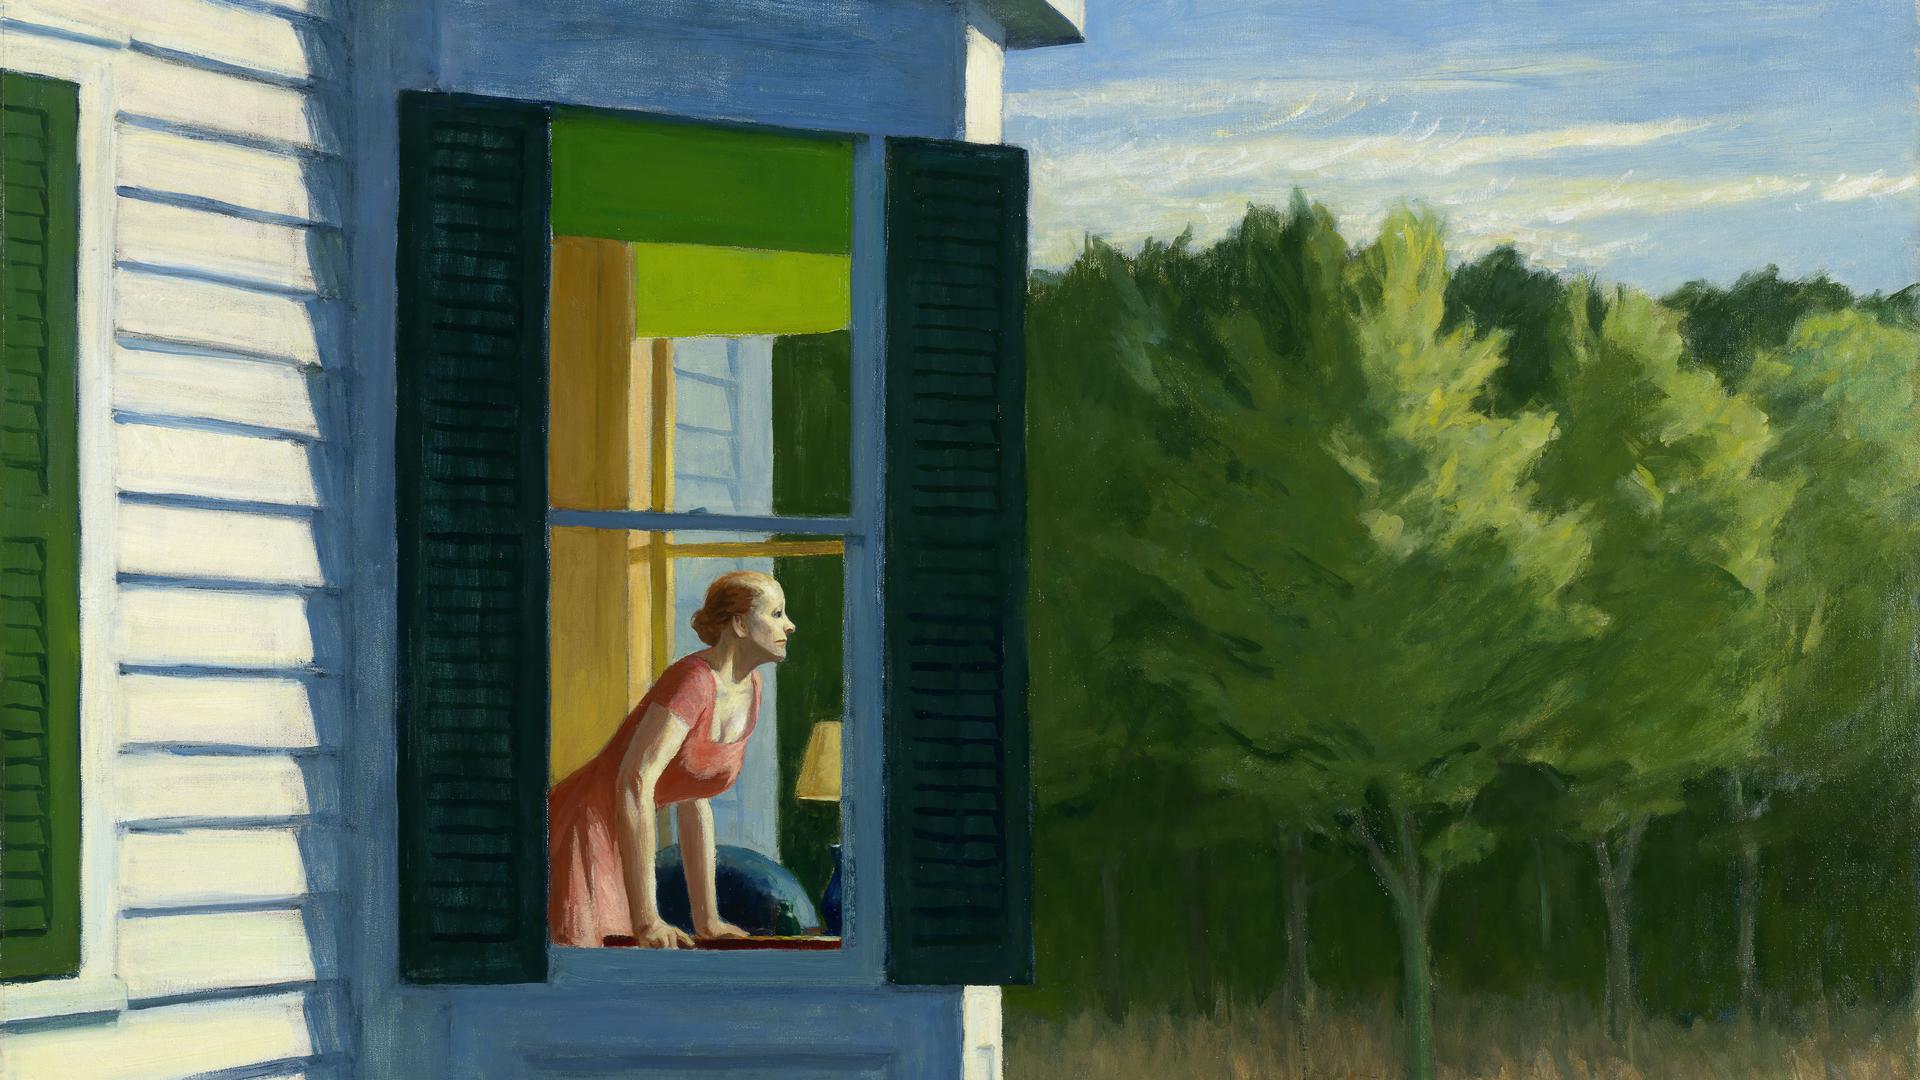 Was erwartet sie? Der Blick auf etwas, was sich dem Betrachter des Bildes entzieht, ist ein wesentliches Merkmal der Malereien von Edward Hopper auch auf dem Gemälde "Cape Cod Morning" (Morgen in Cape Cod) von 1950.